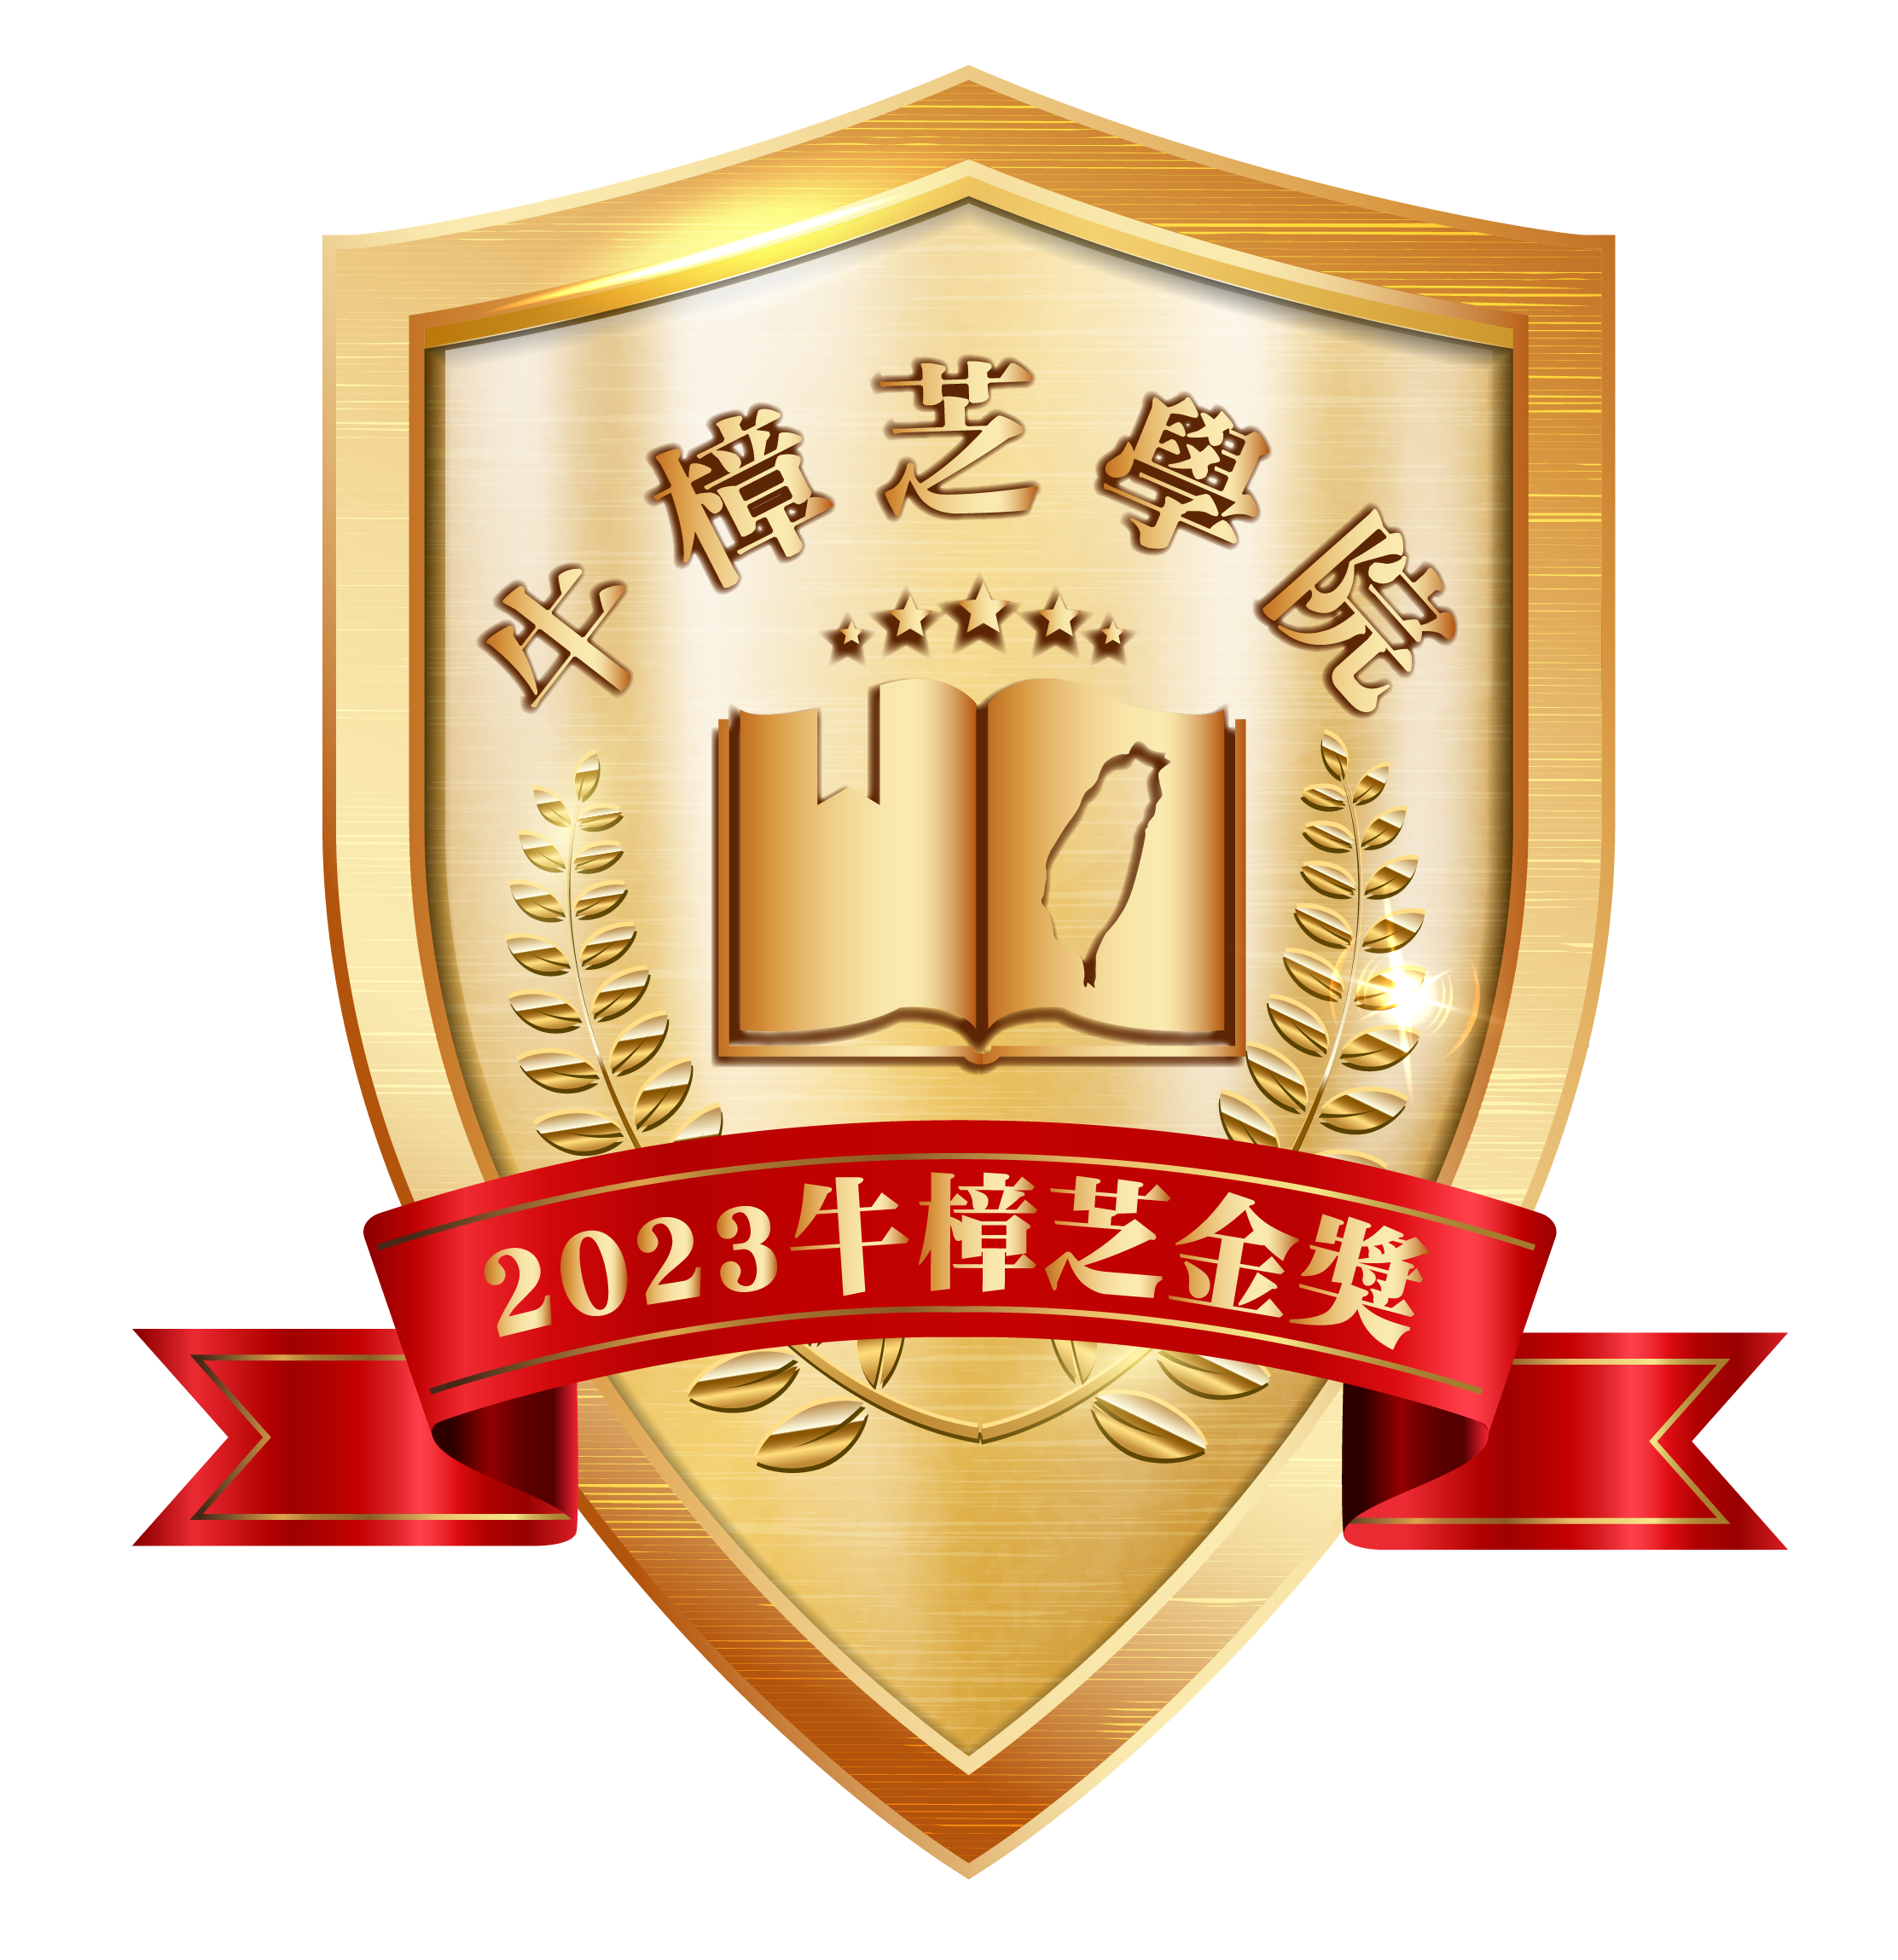 2023牛樟芝學院推薦-06 (2)